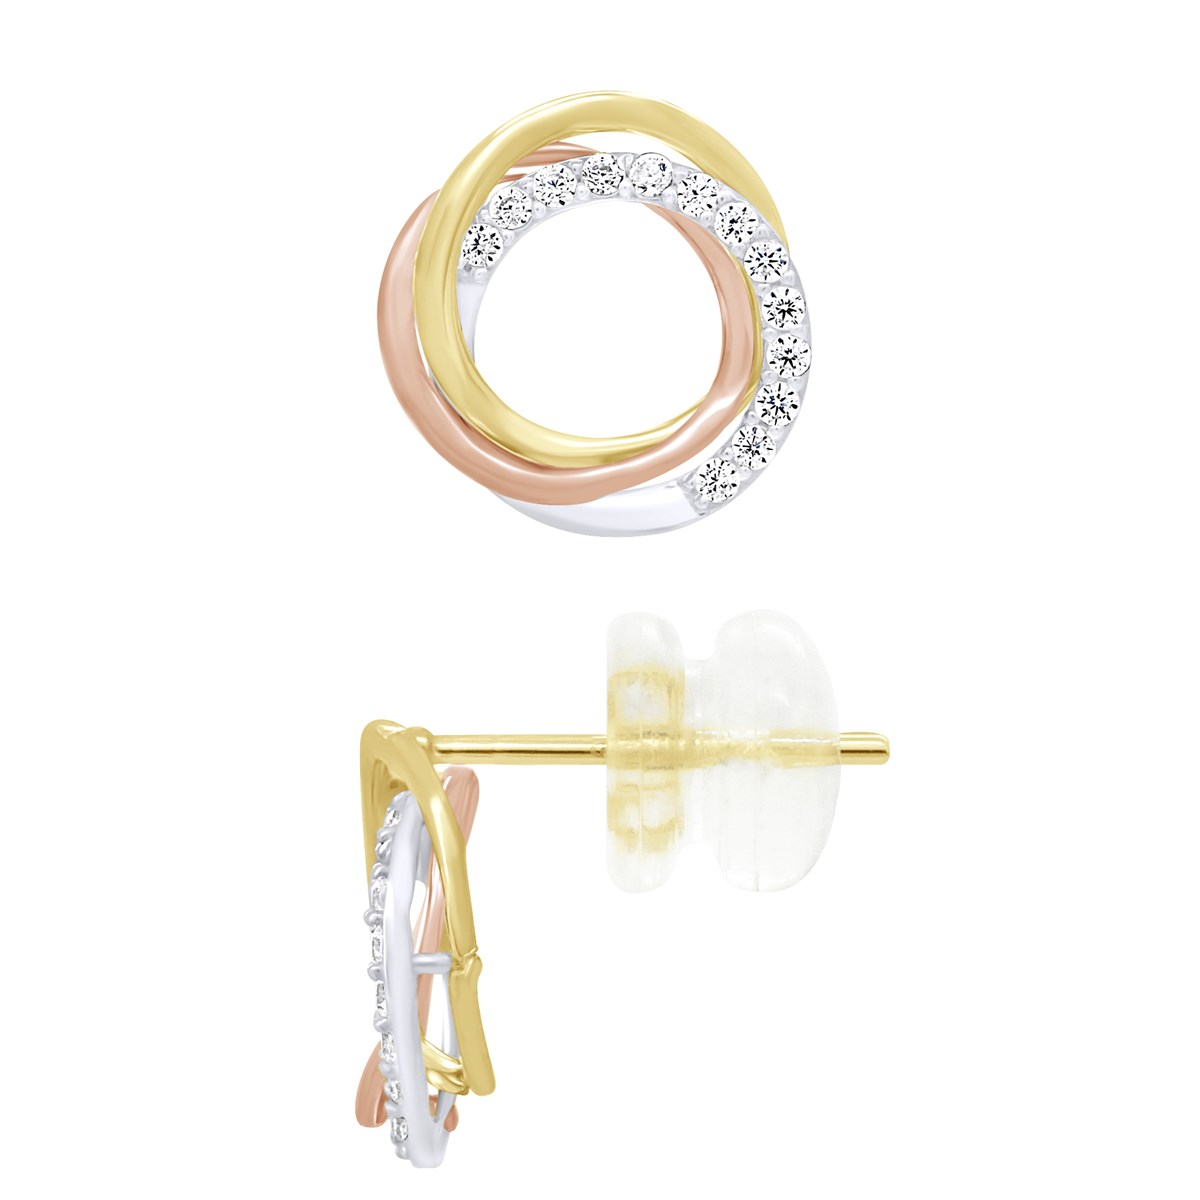 Boucles d'Oreilles Trois couleurs - 3 anneaux - Fidélité, Amour et Éternité serties d' Oxydes de Zirconium